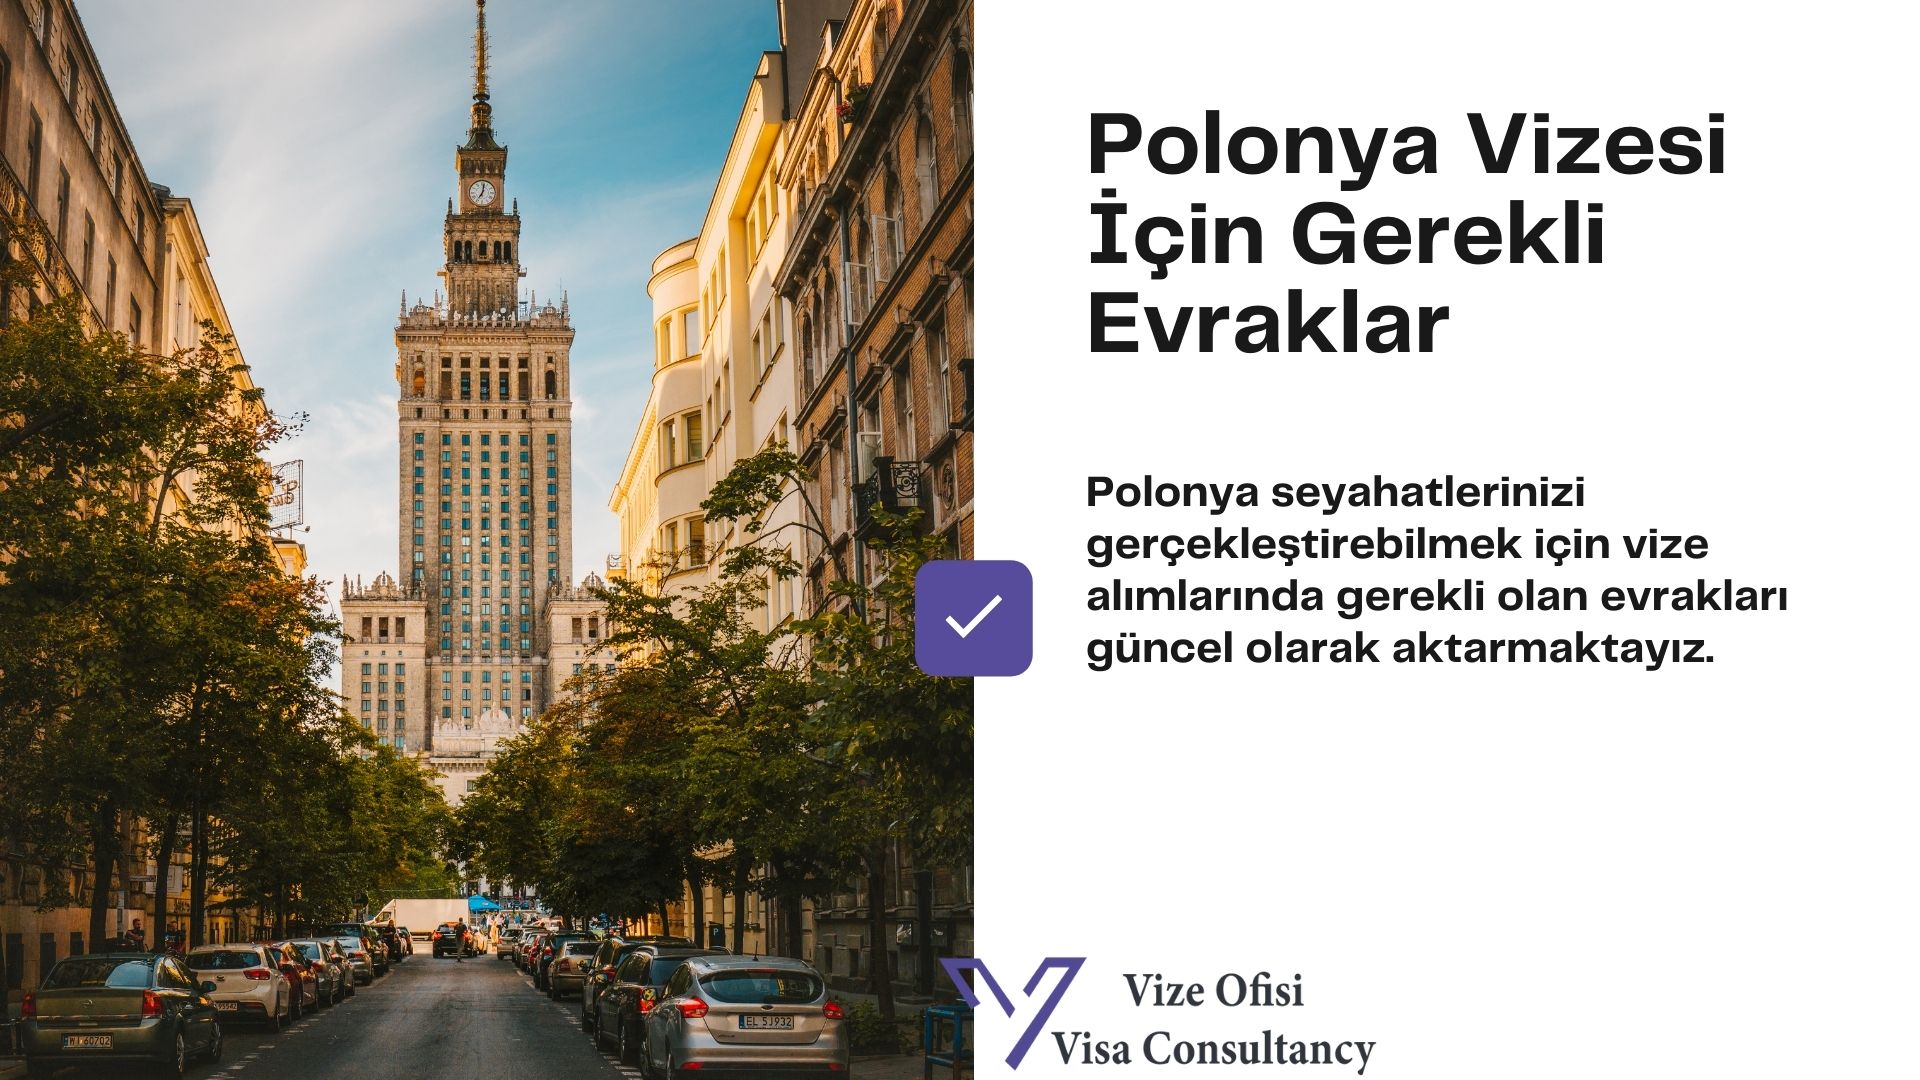 Polonya Vize Evrakları 2021 Tam Liste